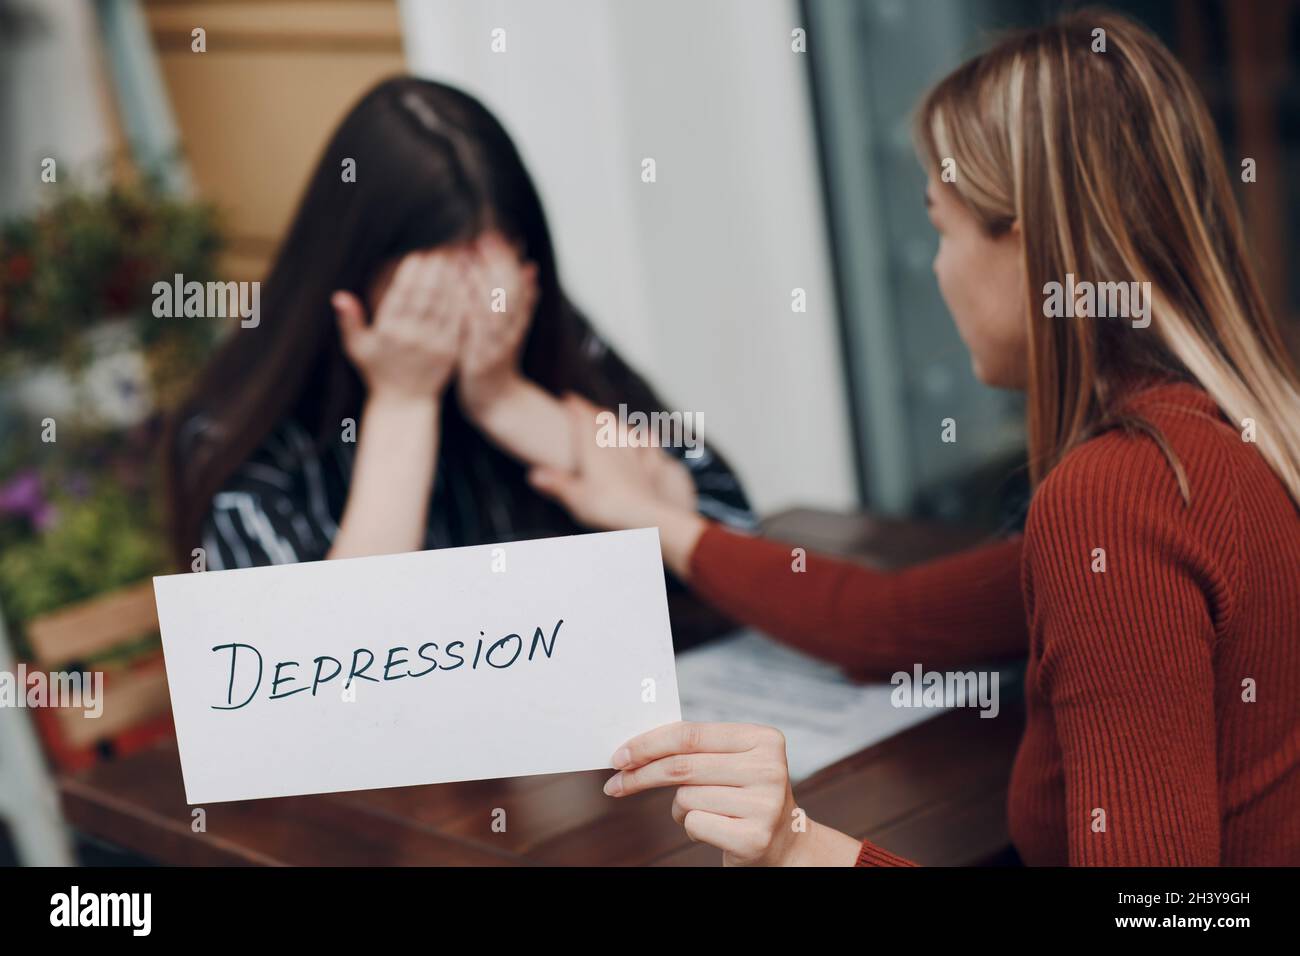 Concept de dépression cachée.Femme pleure.Deuxième femme tenant un papier blanc étiqueté de dépression dans la main.Deux femmes talki Banque D'Images